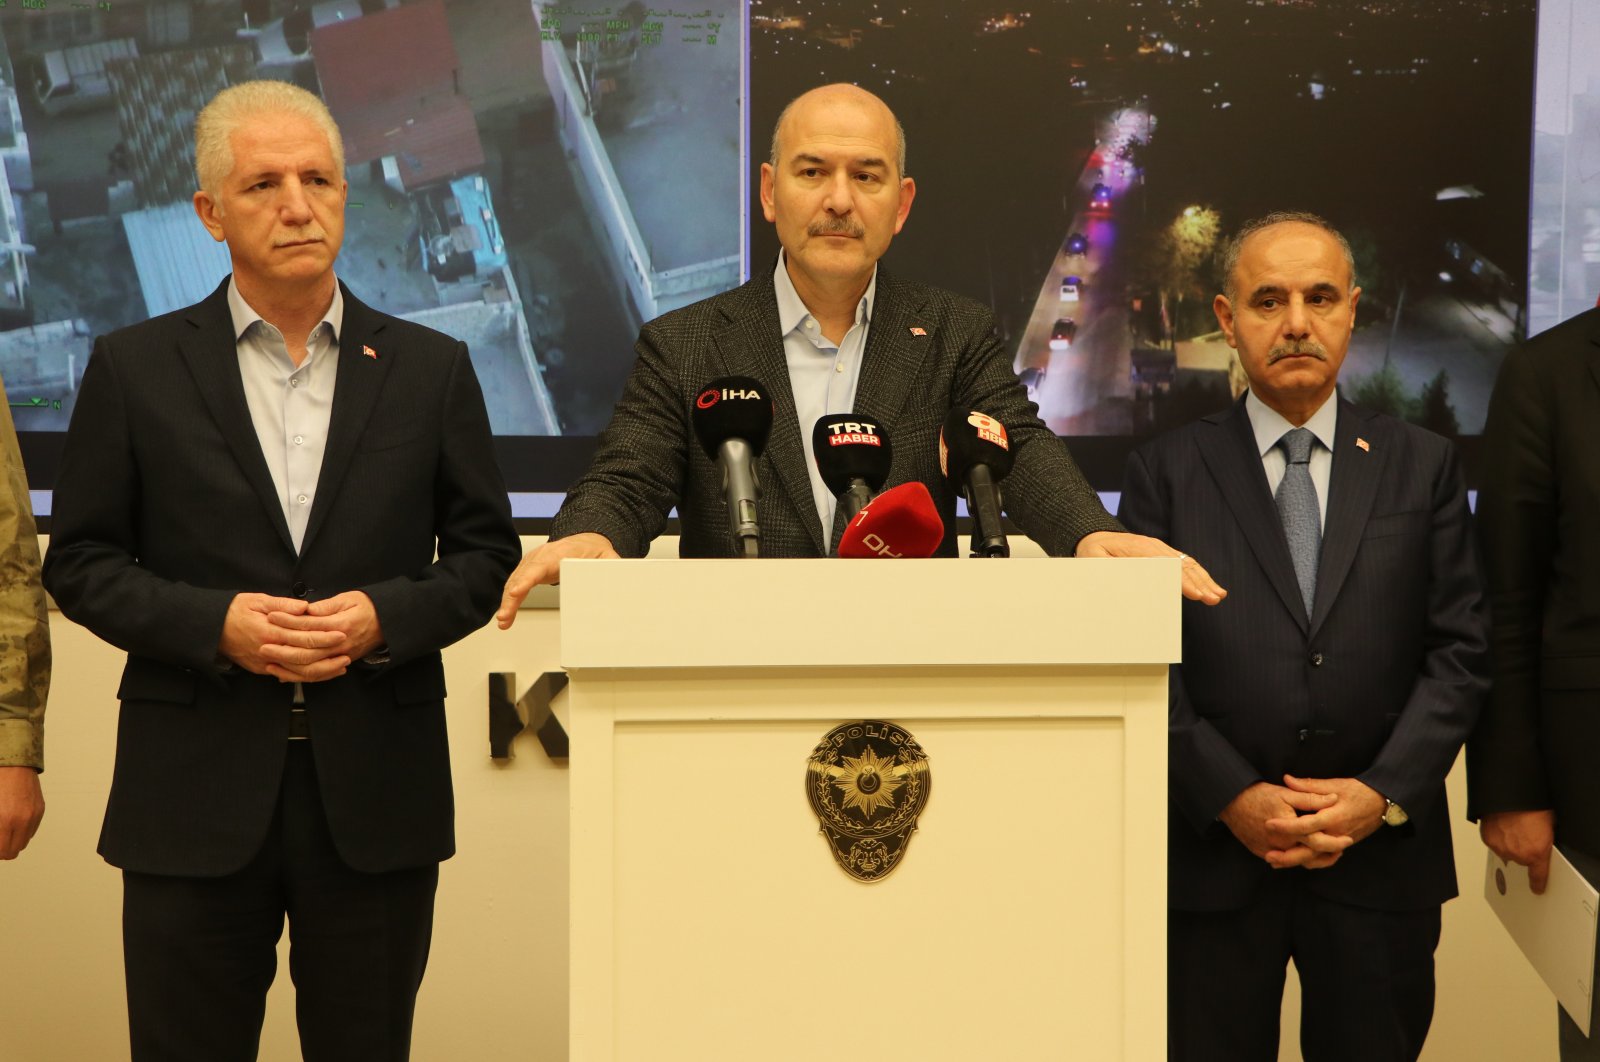 149 ditangkap dalam operasi anti-narkotika di Gaziantep Türkiye: Soylu